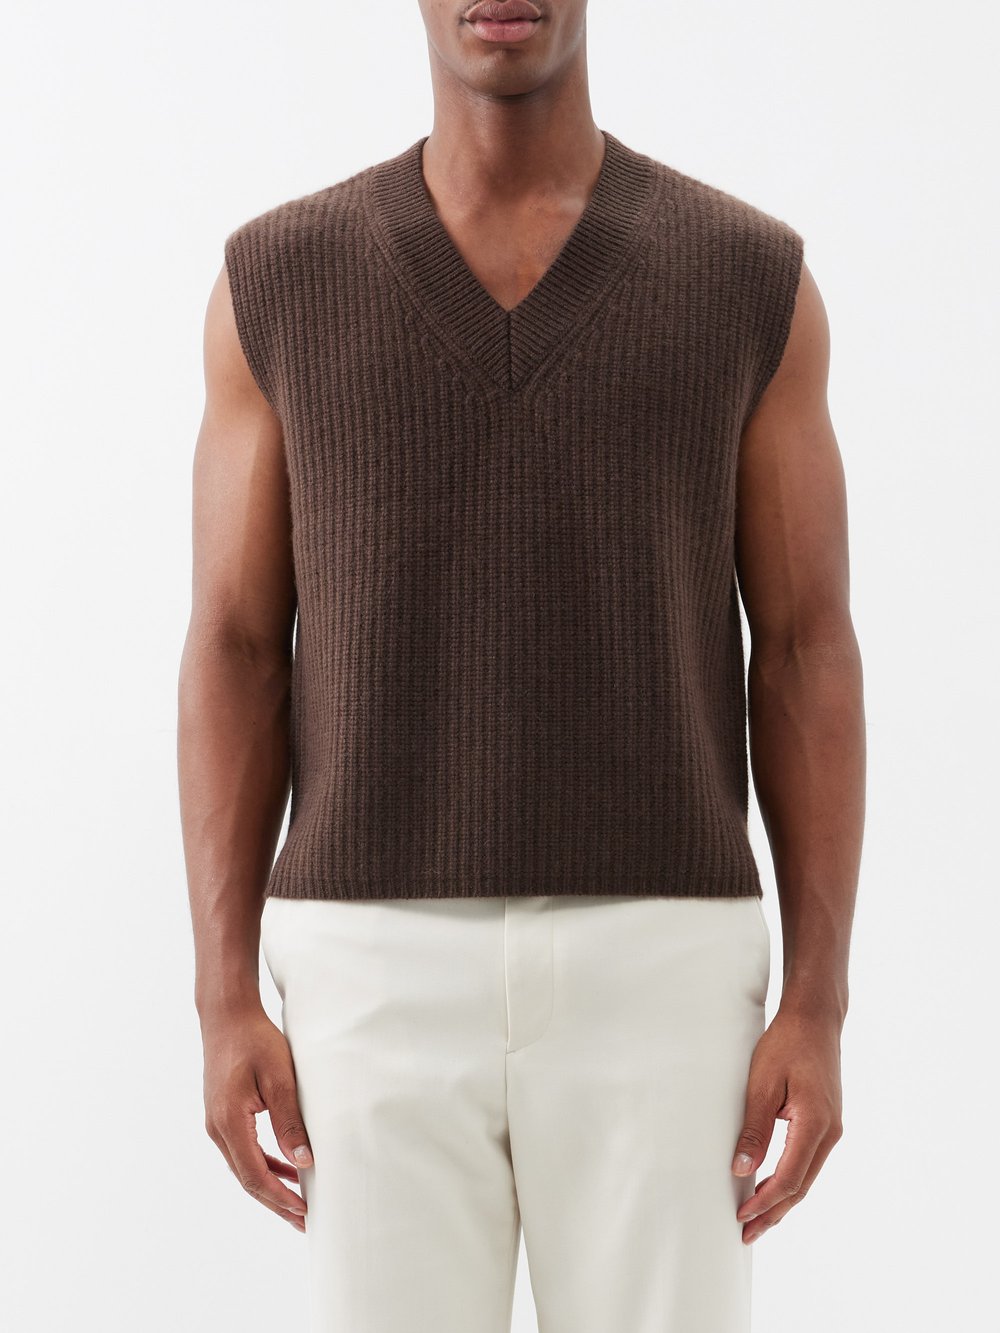 Кашемировый свитер-жилет mr southbank Arch4, коричневый mr organic passata 690g